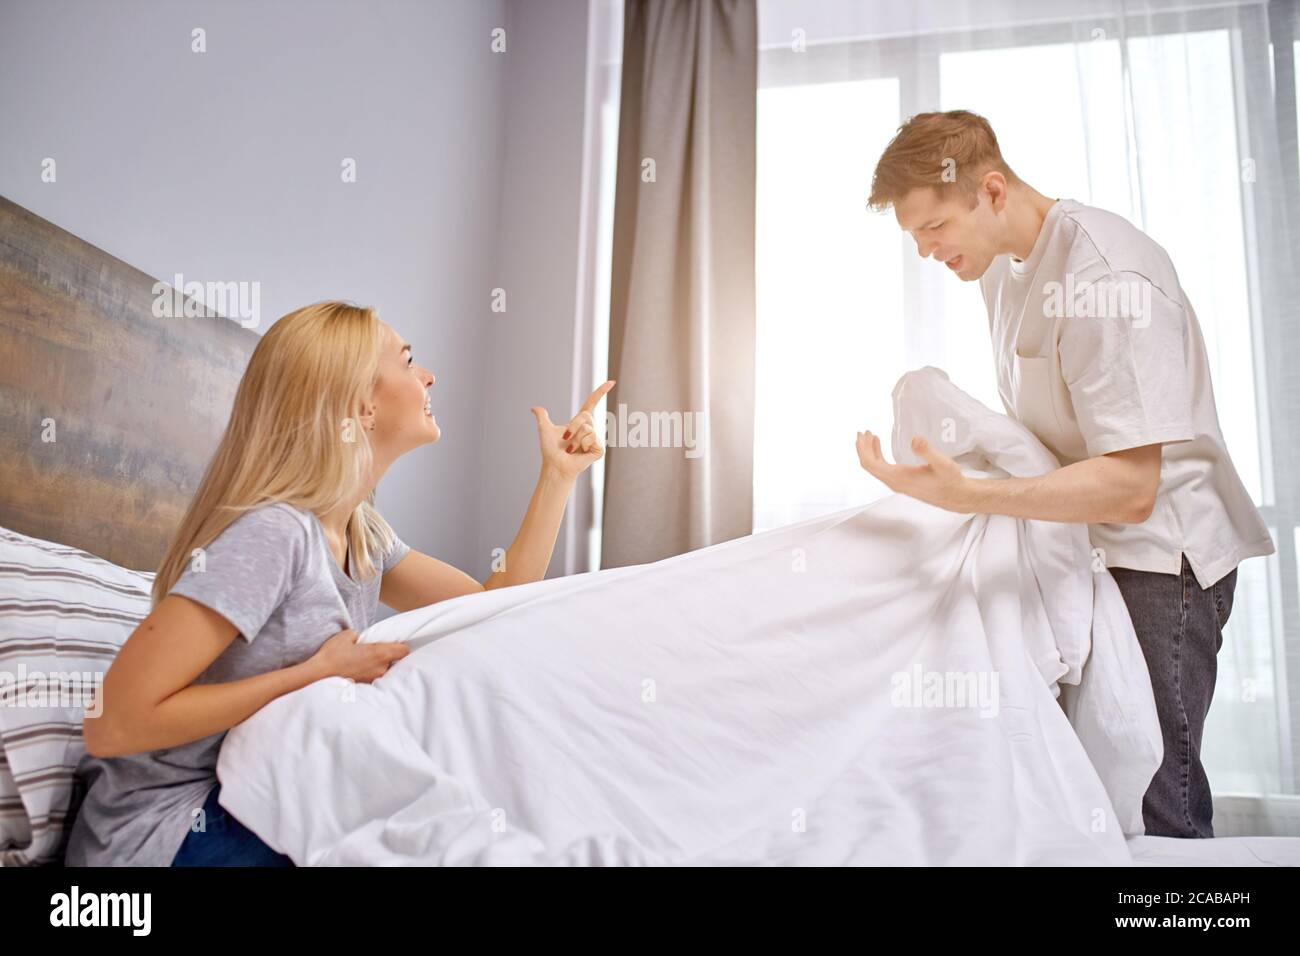 insatisfait de la vie de famille, mari et femme querelle dans le lit, l'homme tient une couverture entre les mains, crie à la femme, désaccord Banque D'Images